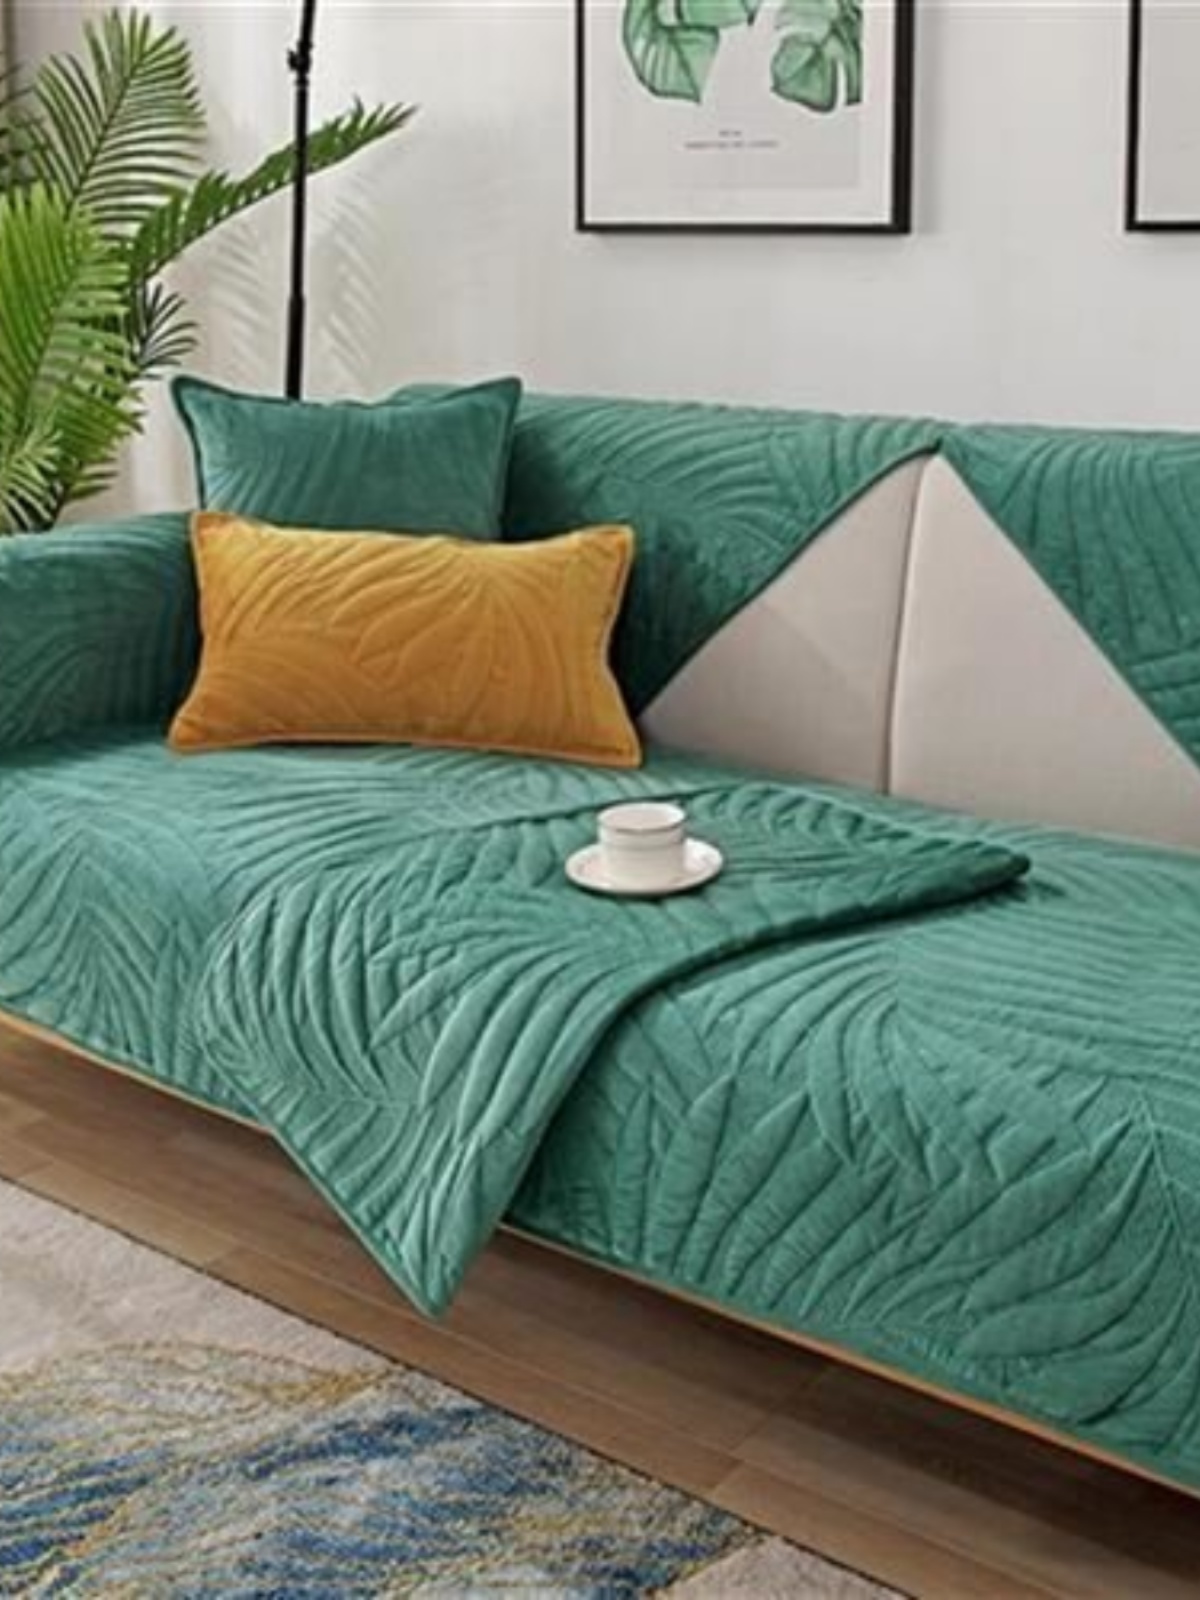 木质沙发垫套新款2020年新1款皮沙发轻奢现r代高端沙发罩潮撞.